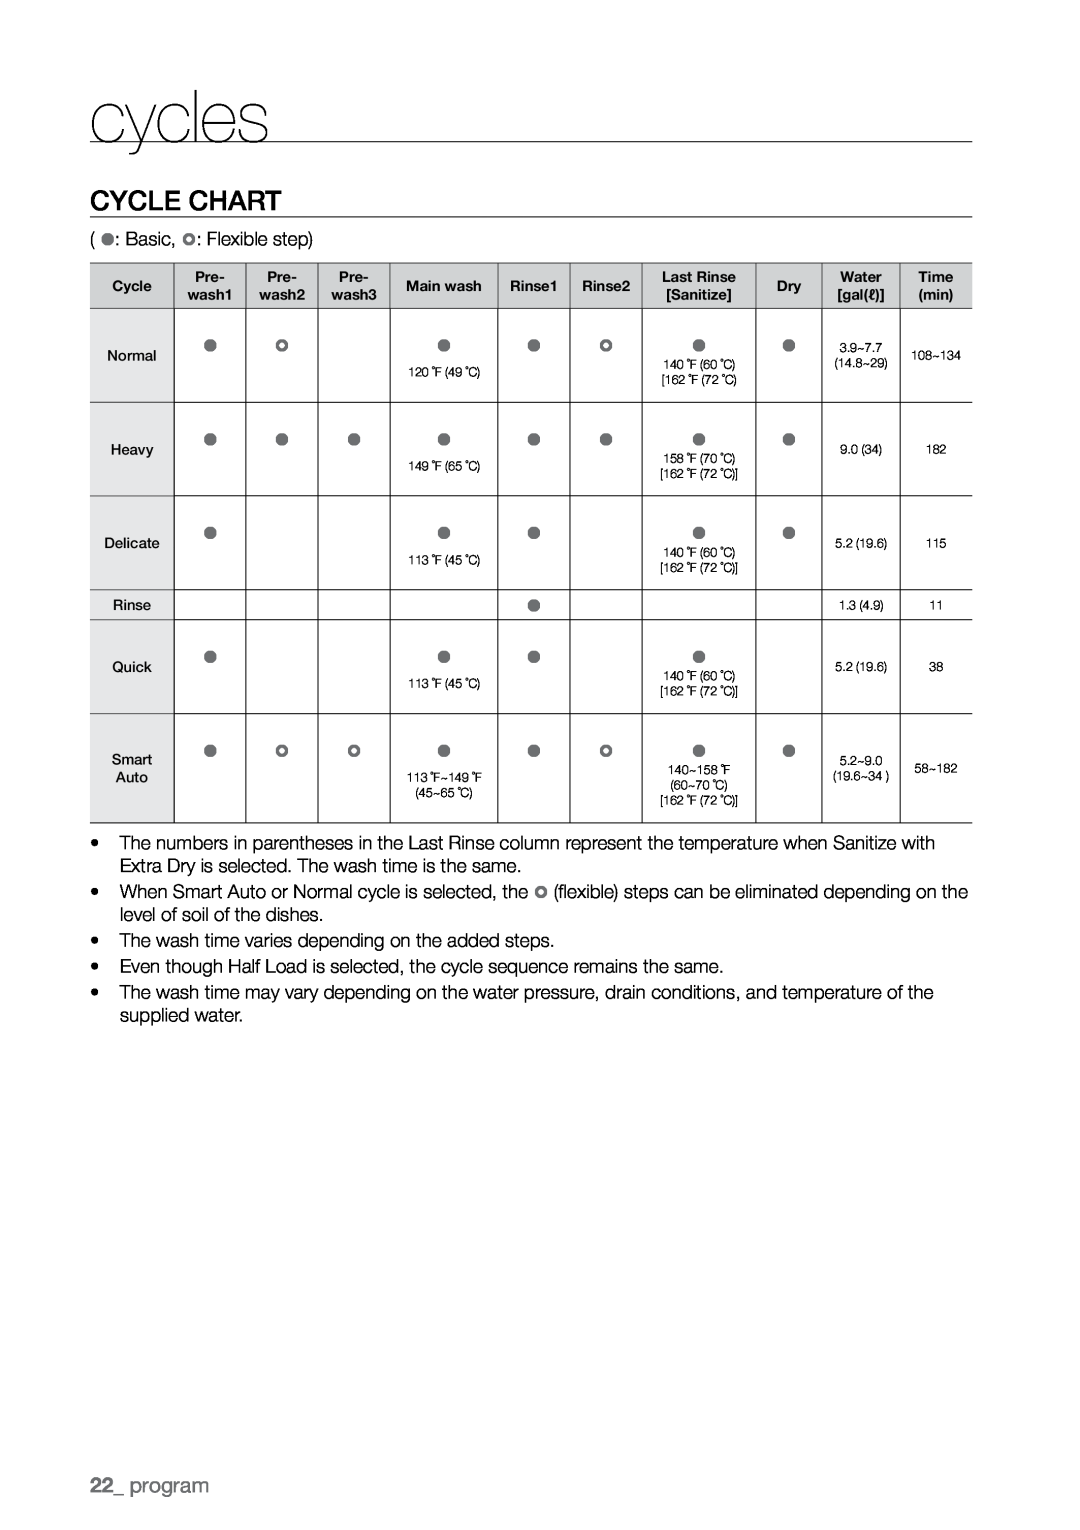 Samsung DMR78 manual cycles, Cycle chart, program 